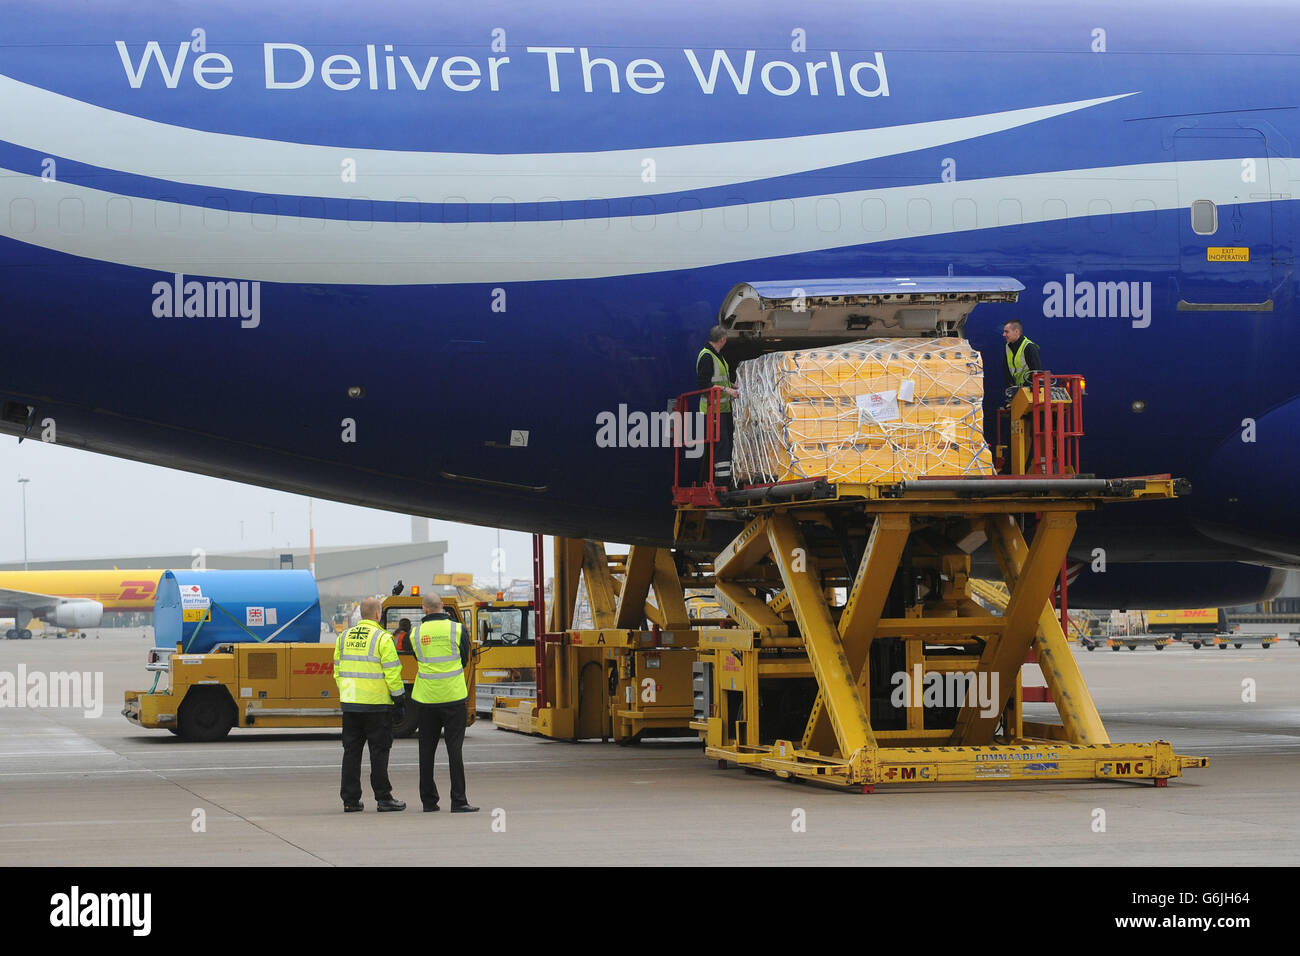 Le personnel au sol charge l'équipement sur un Boeing 747 de l'aéroport East Midlands, en direction de Cebu aux Philippines, pour aider à l'effort de secours suite à la dévastation causée par le typhon Haiyan. Banque D'Images